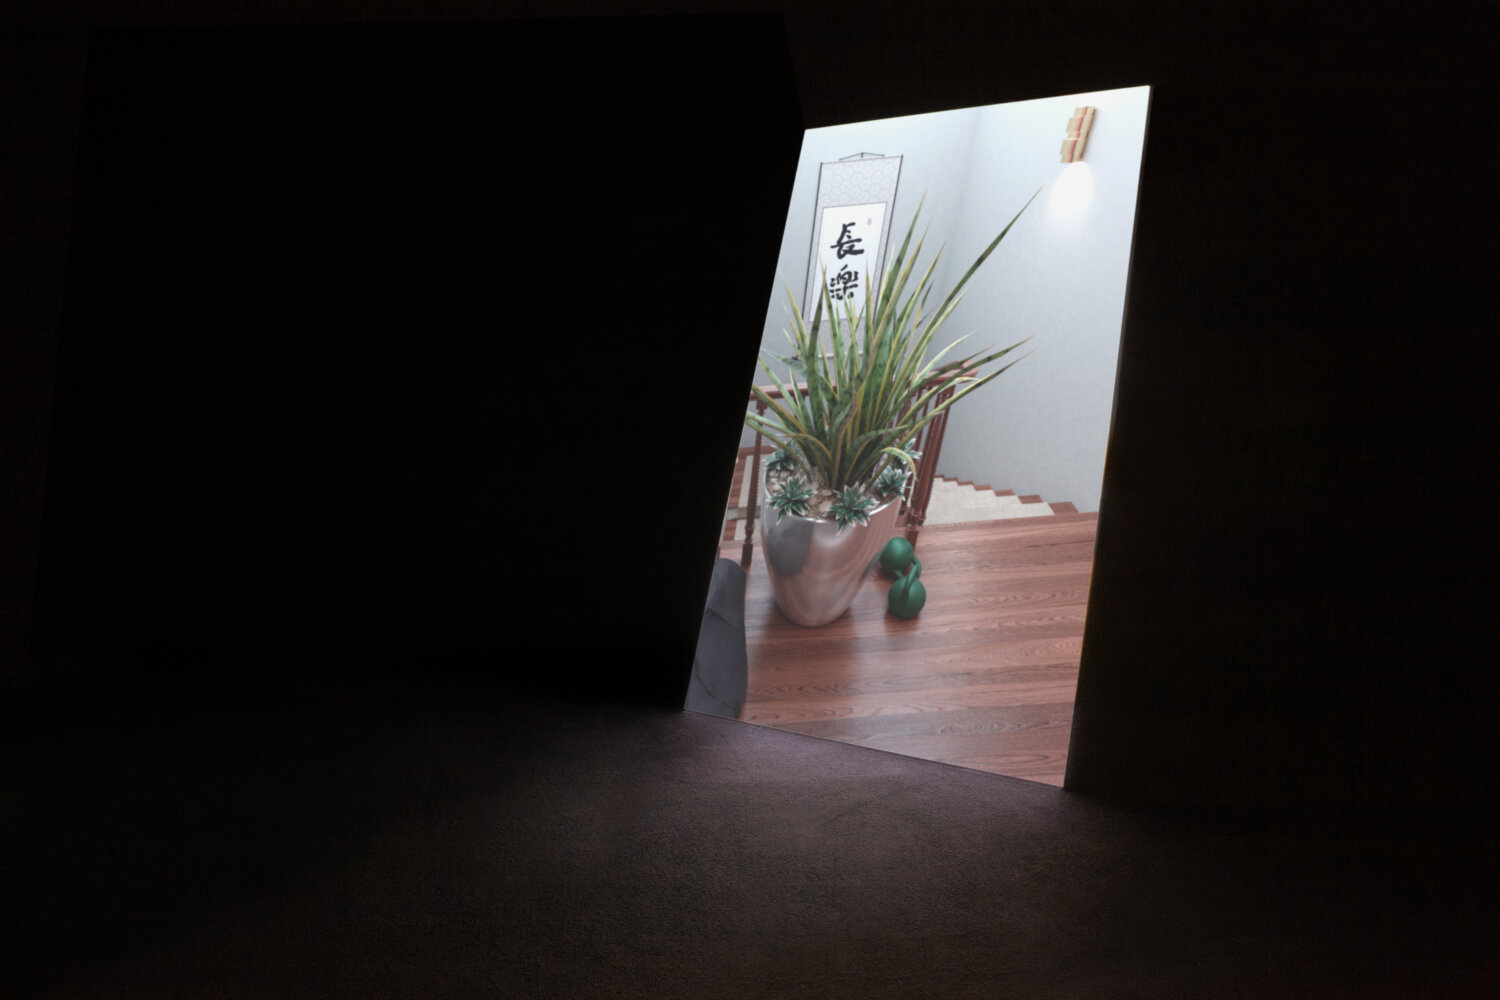 In einem dunklen Raum wird mittig eine Videoprojektion projiziert. Darauf ist Stefanie Schwarzwimmers 3D-Animation "Going Places 2020" zu sehen. Man sieht einen Treppenabsatz, auf dem Hanteln und ein Bogenhanf stehen.